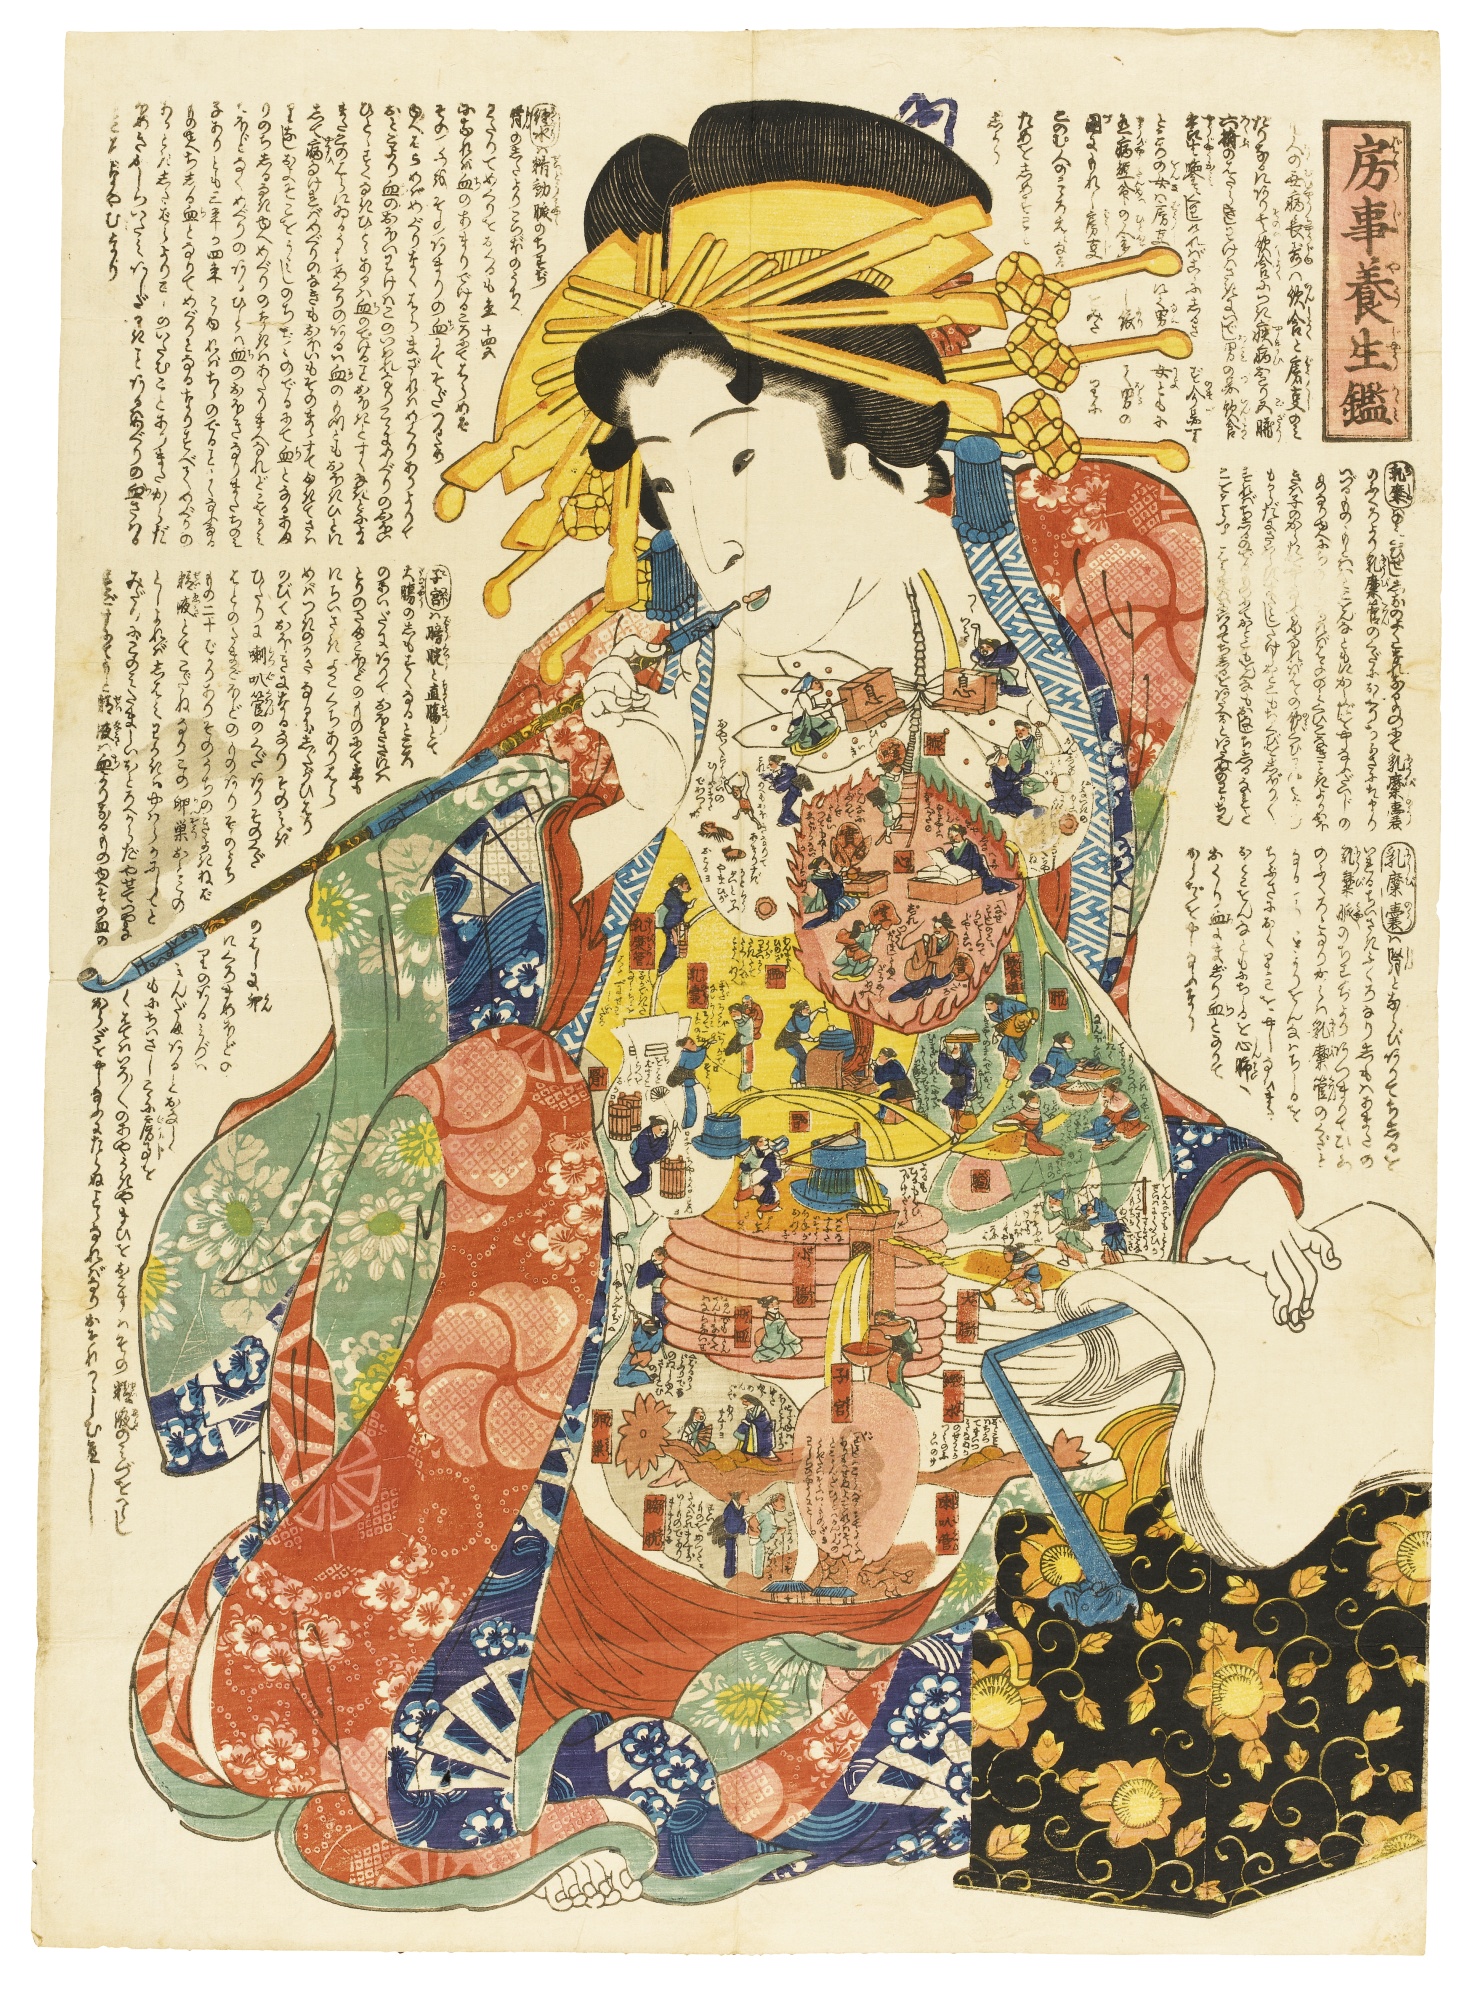 L’anatomie du corps humain en Kabuki dans des estampes japonaises